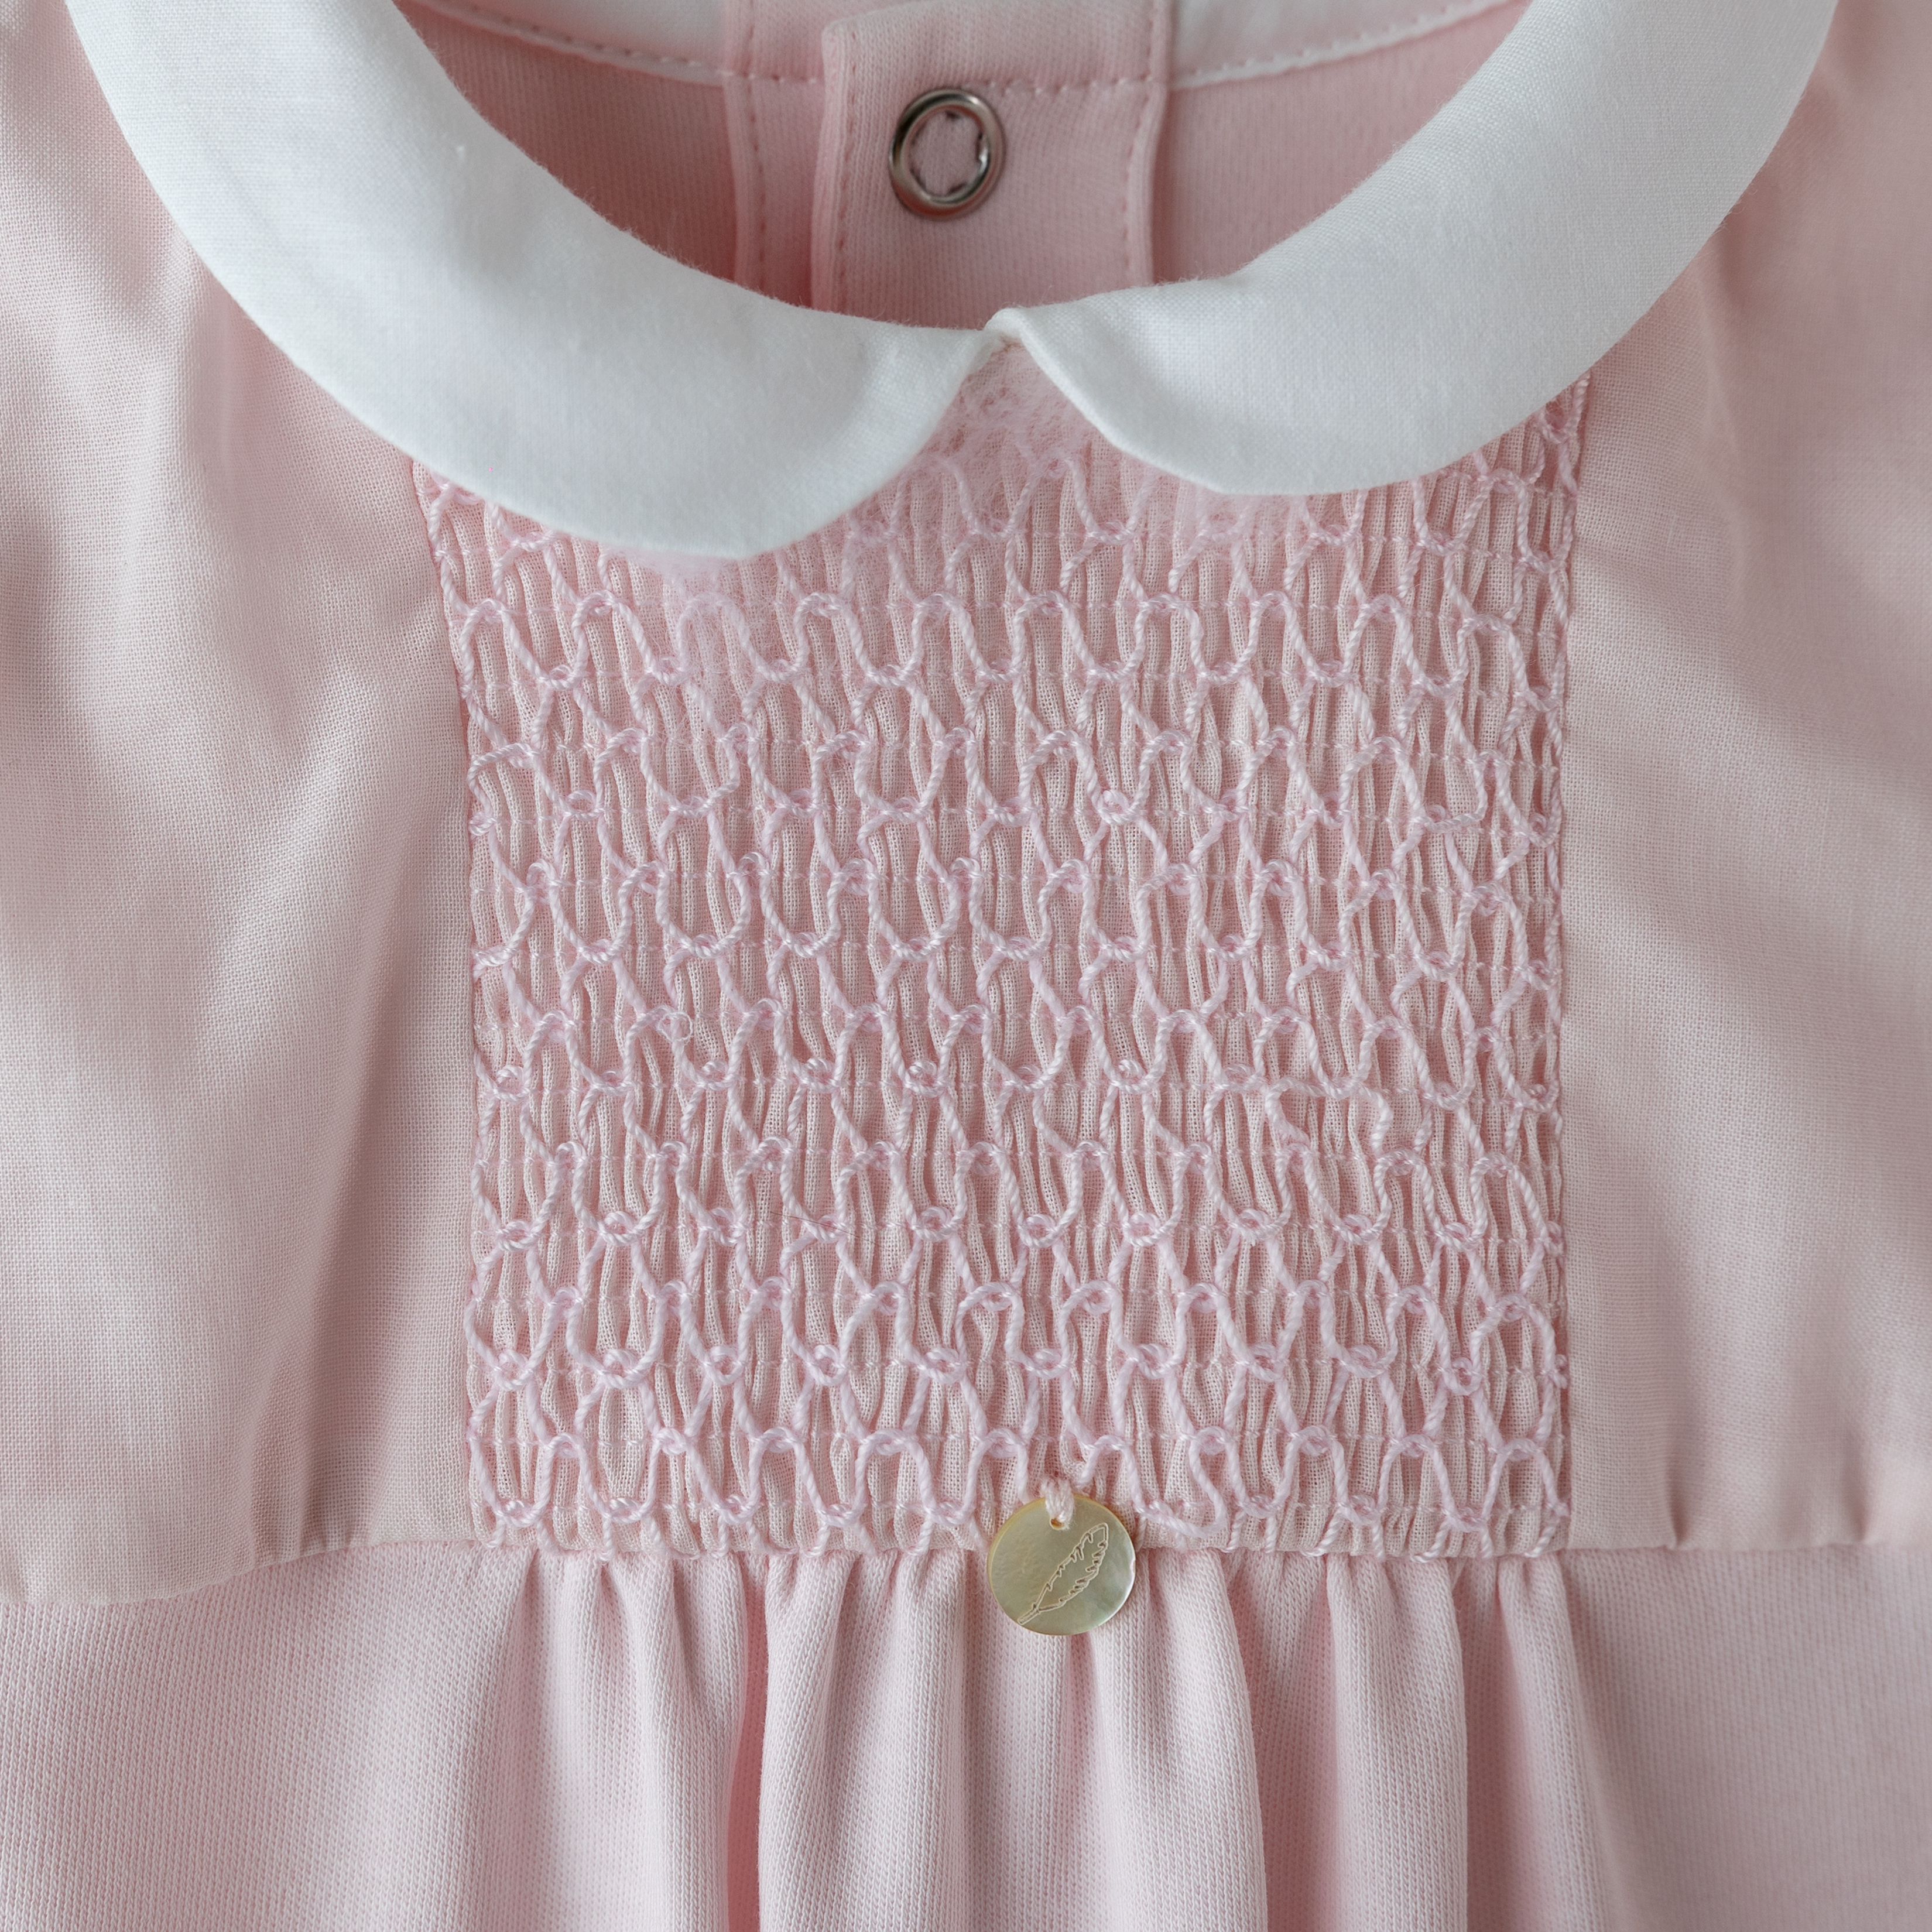 Babygrow & Hat Set - Pink Smocked